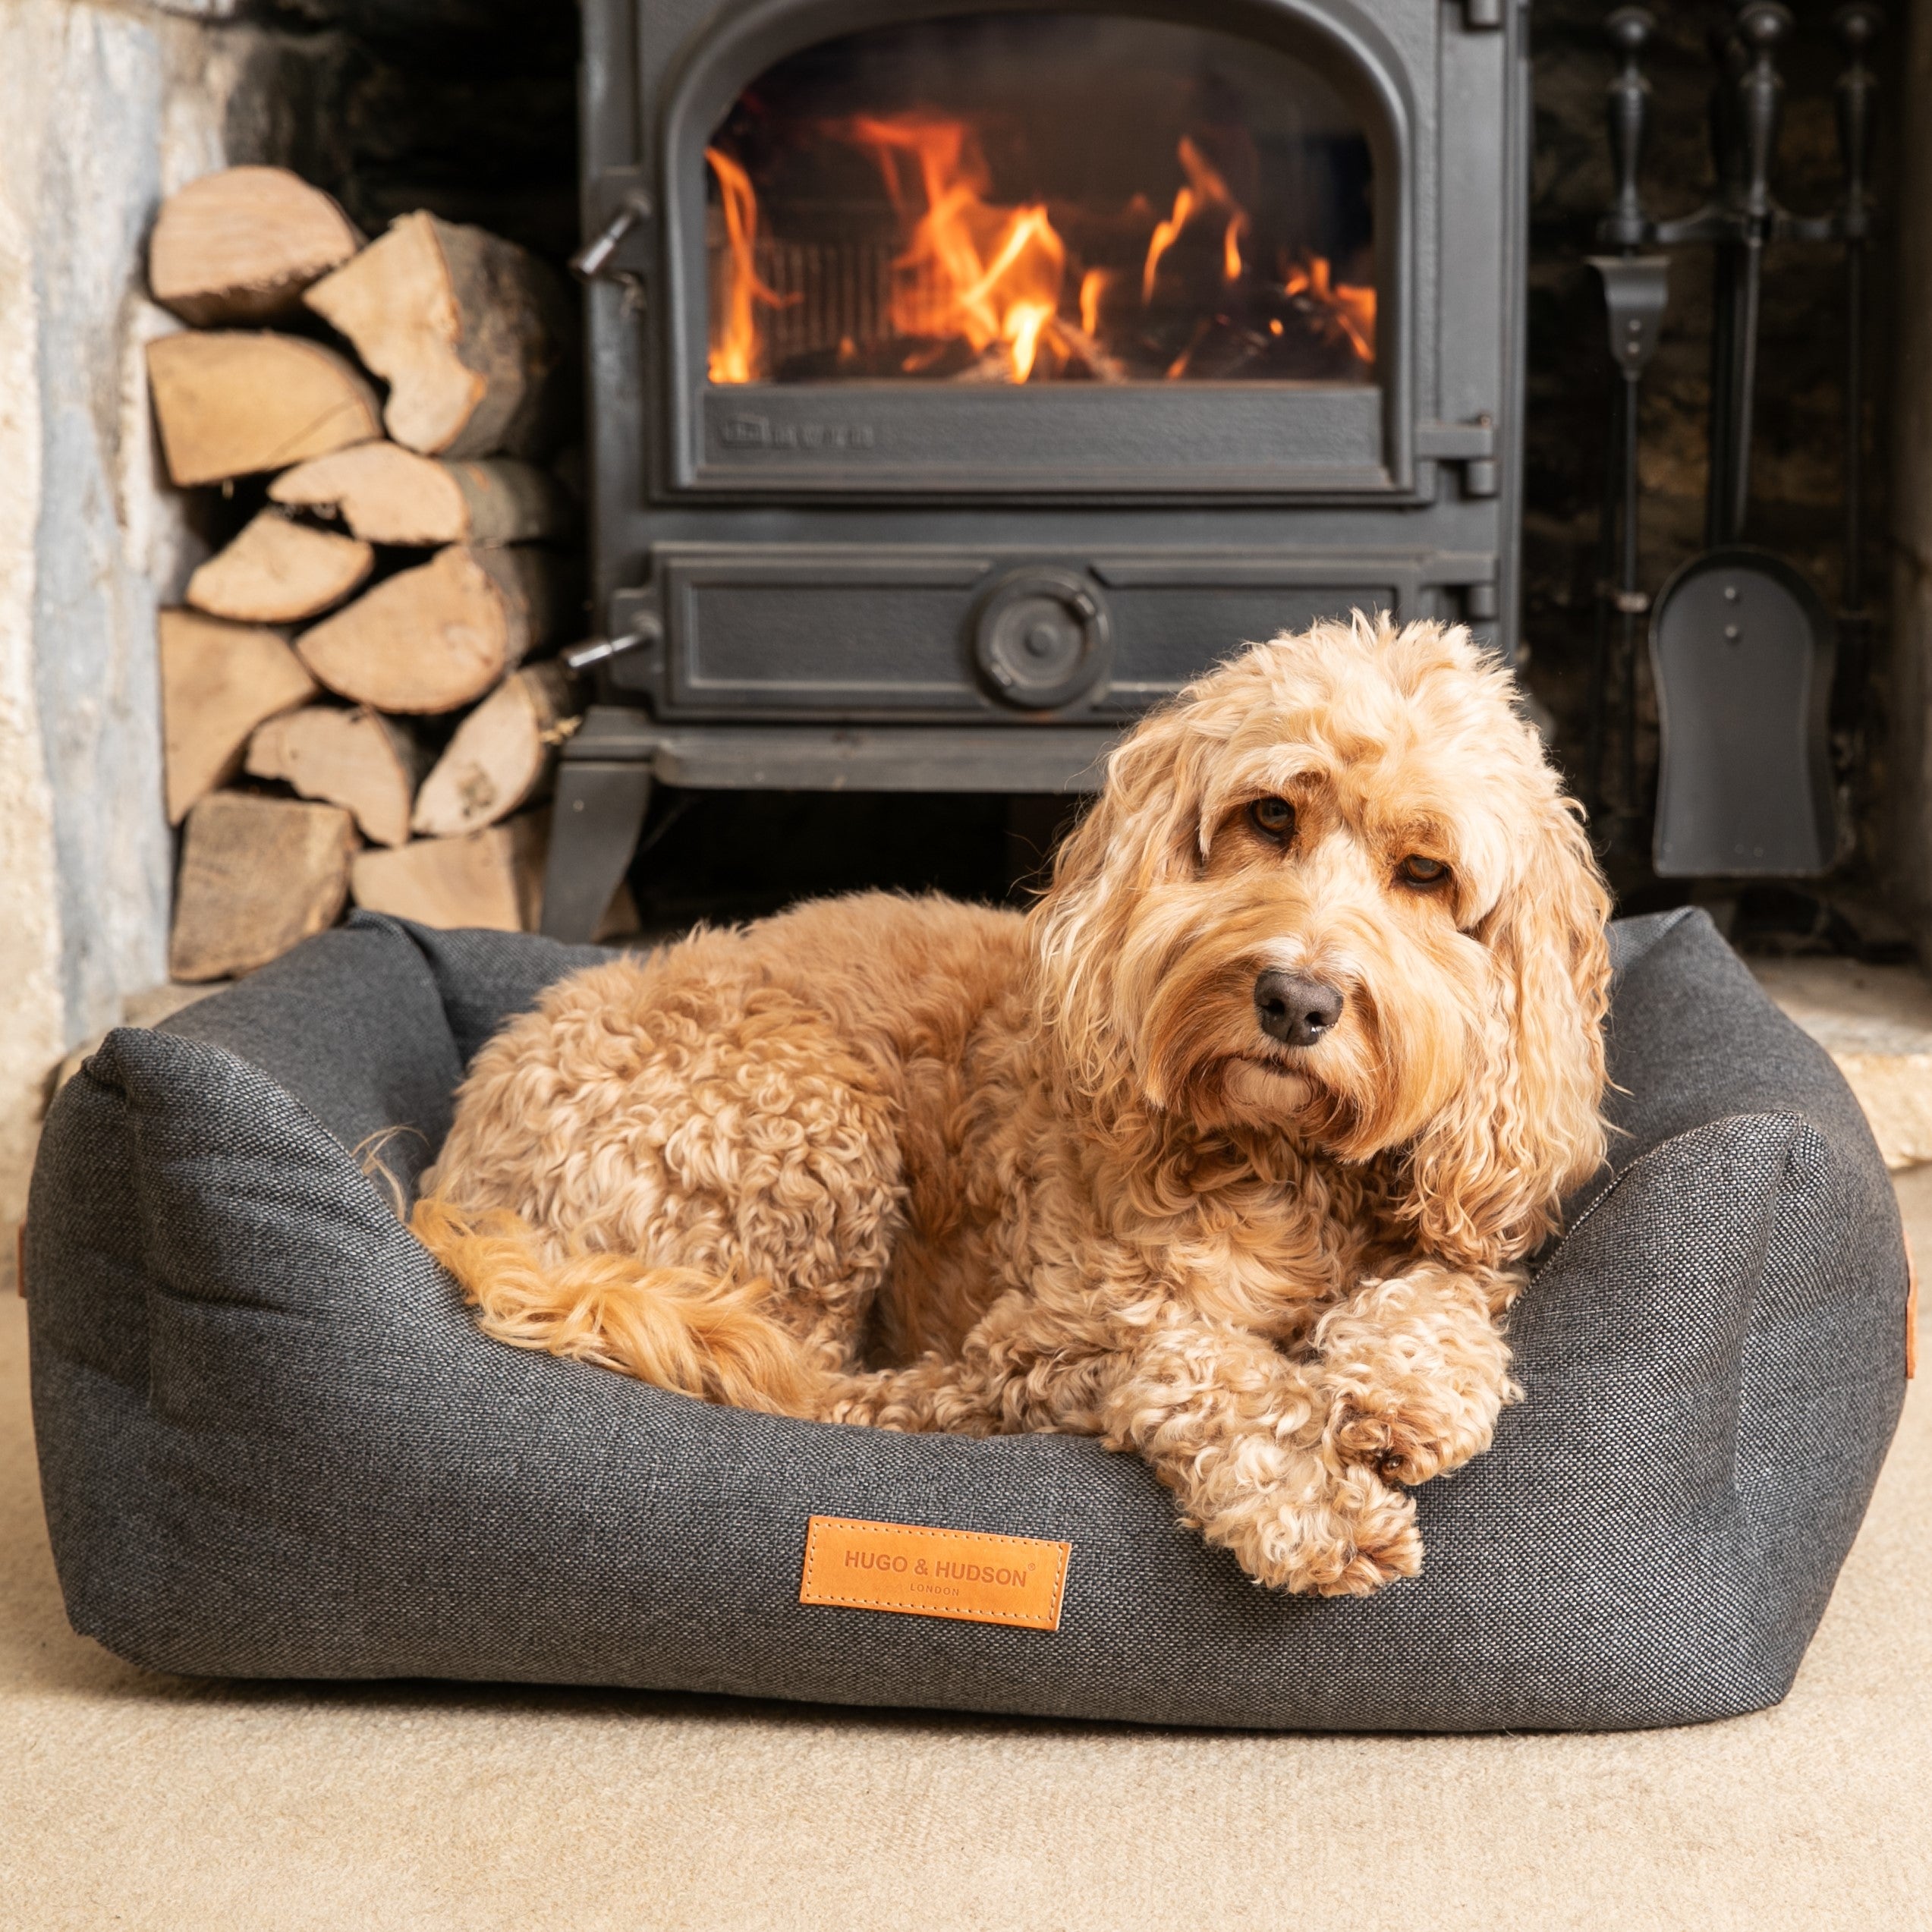 Hugo & Hudson Luxury Box Dog Bed Charcoal